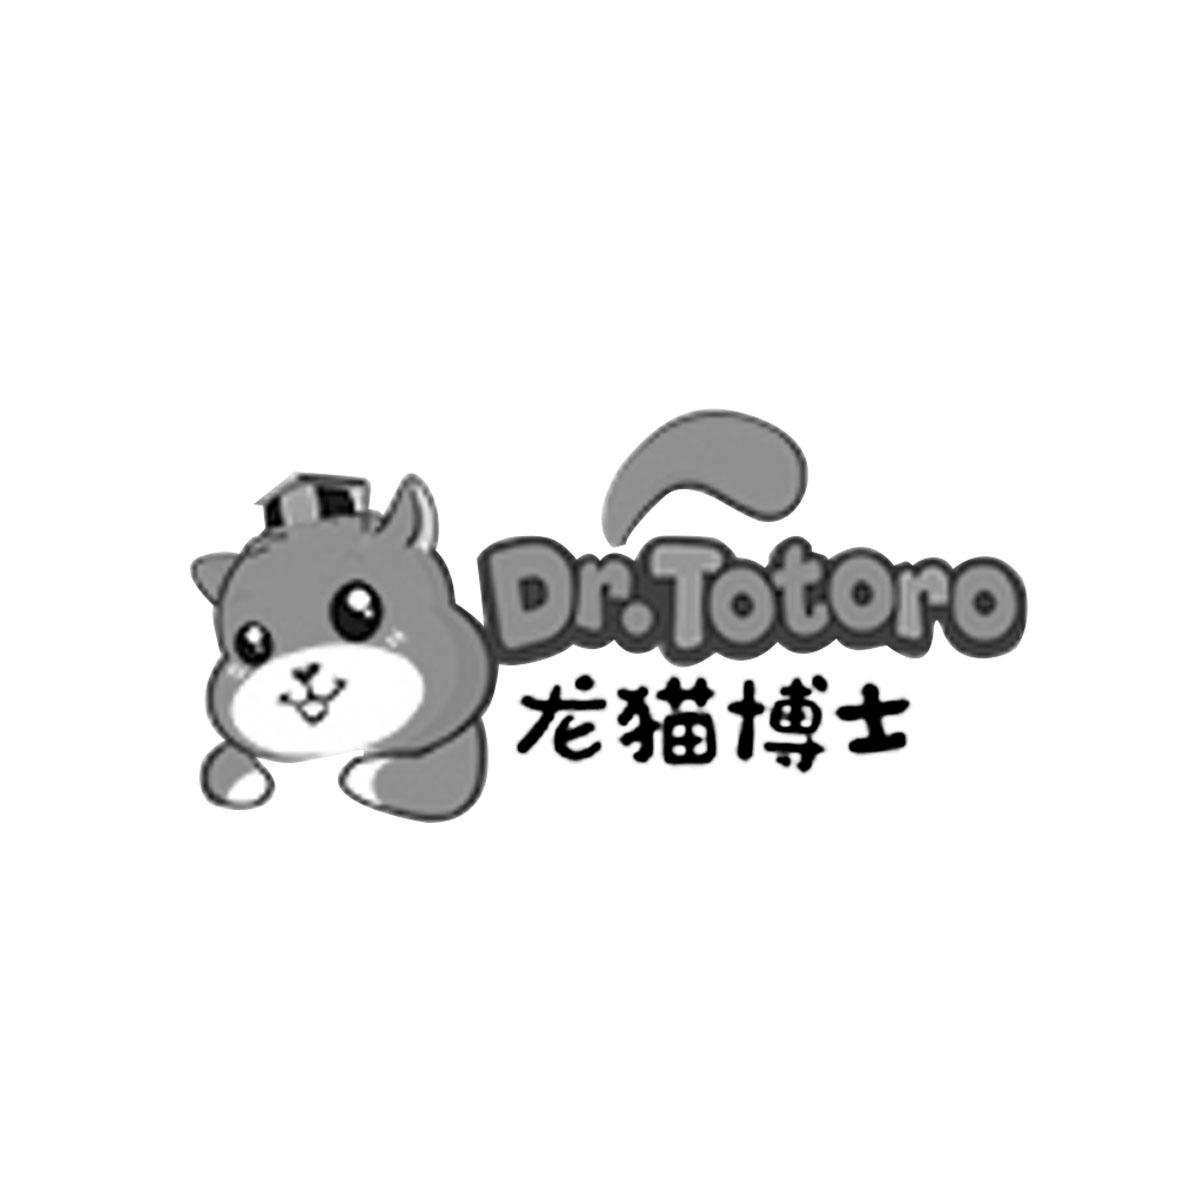 龍貓博士 DR.TOTORO